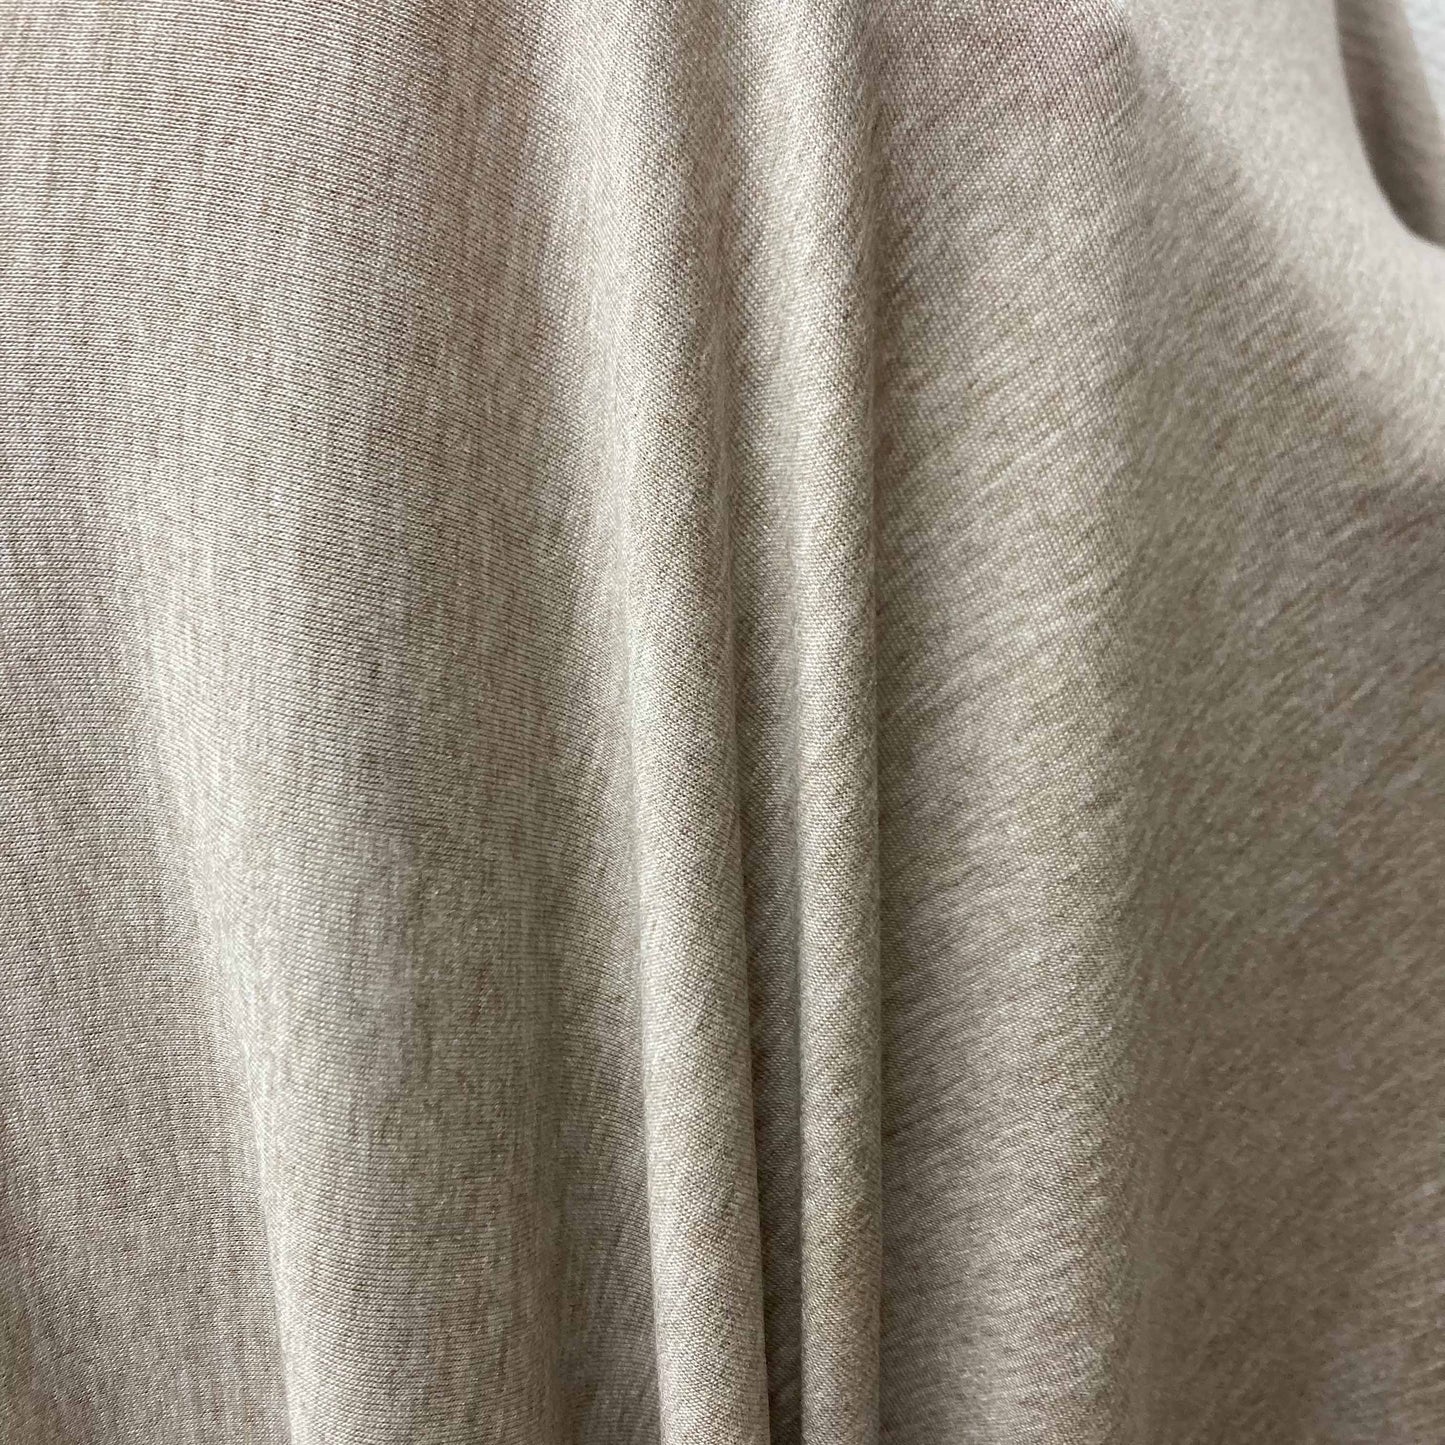 Viscose Jersey Fabric - Oatmeal